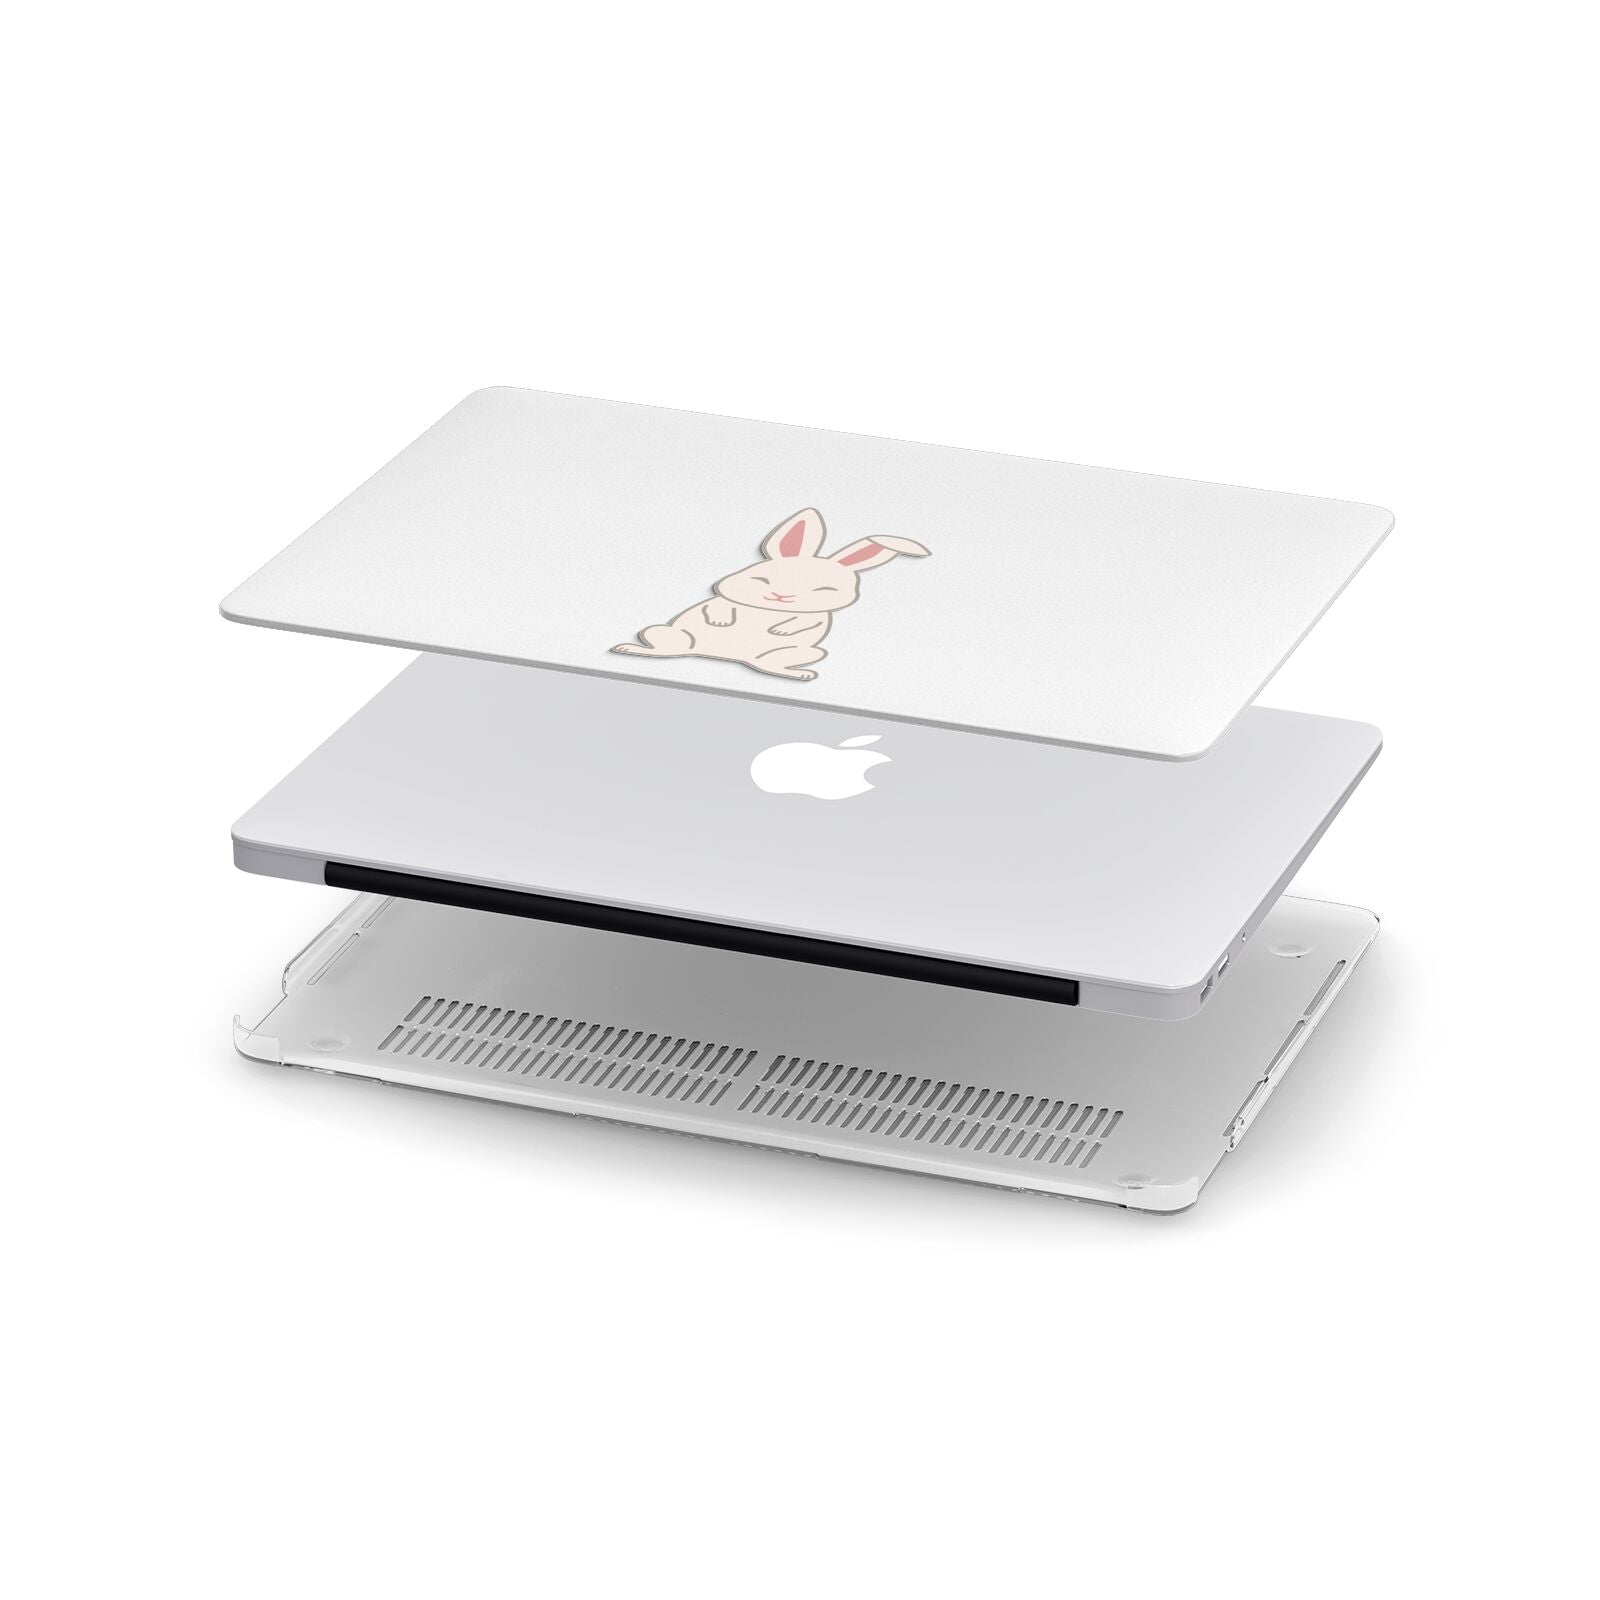 Bunny Apple MacBook Case in Detail